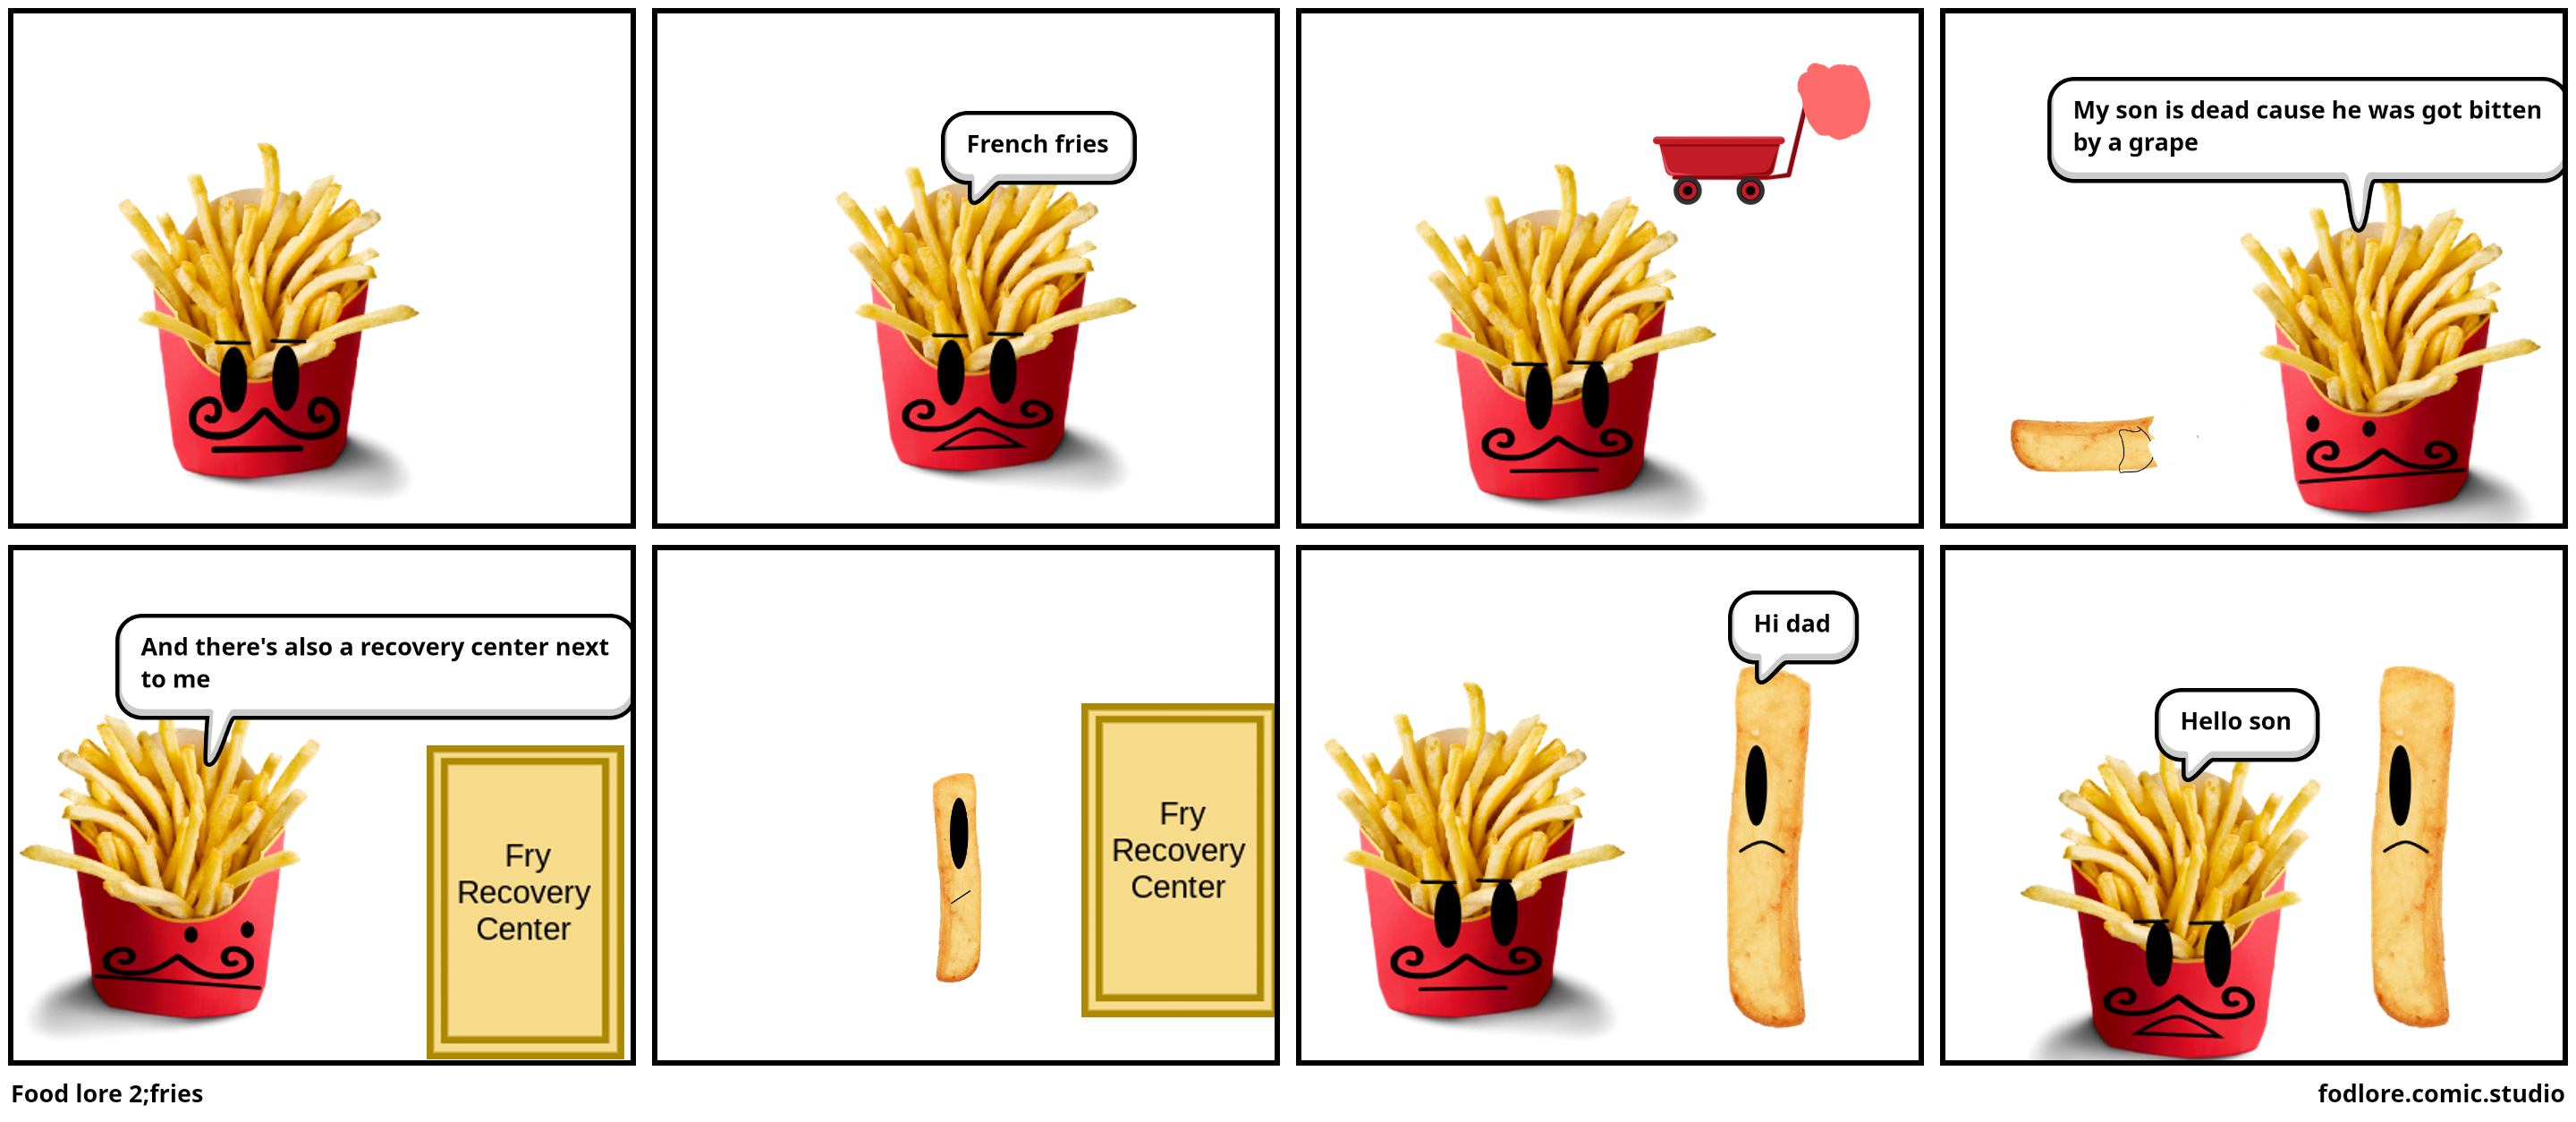 Food lore 2;fries